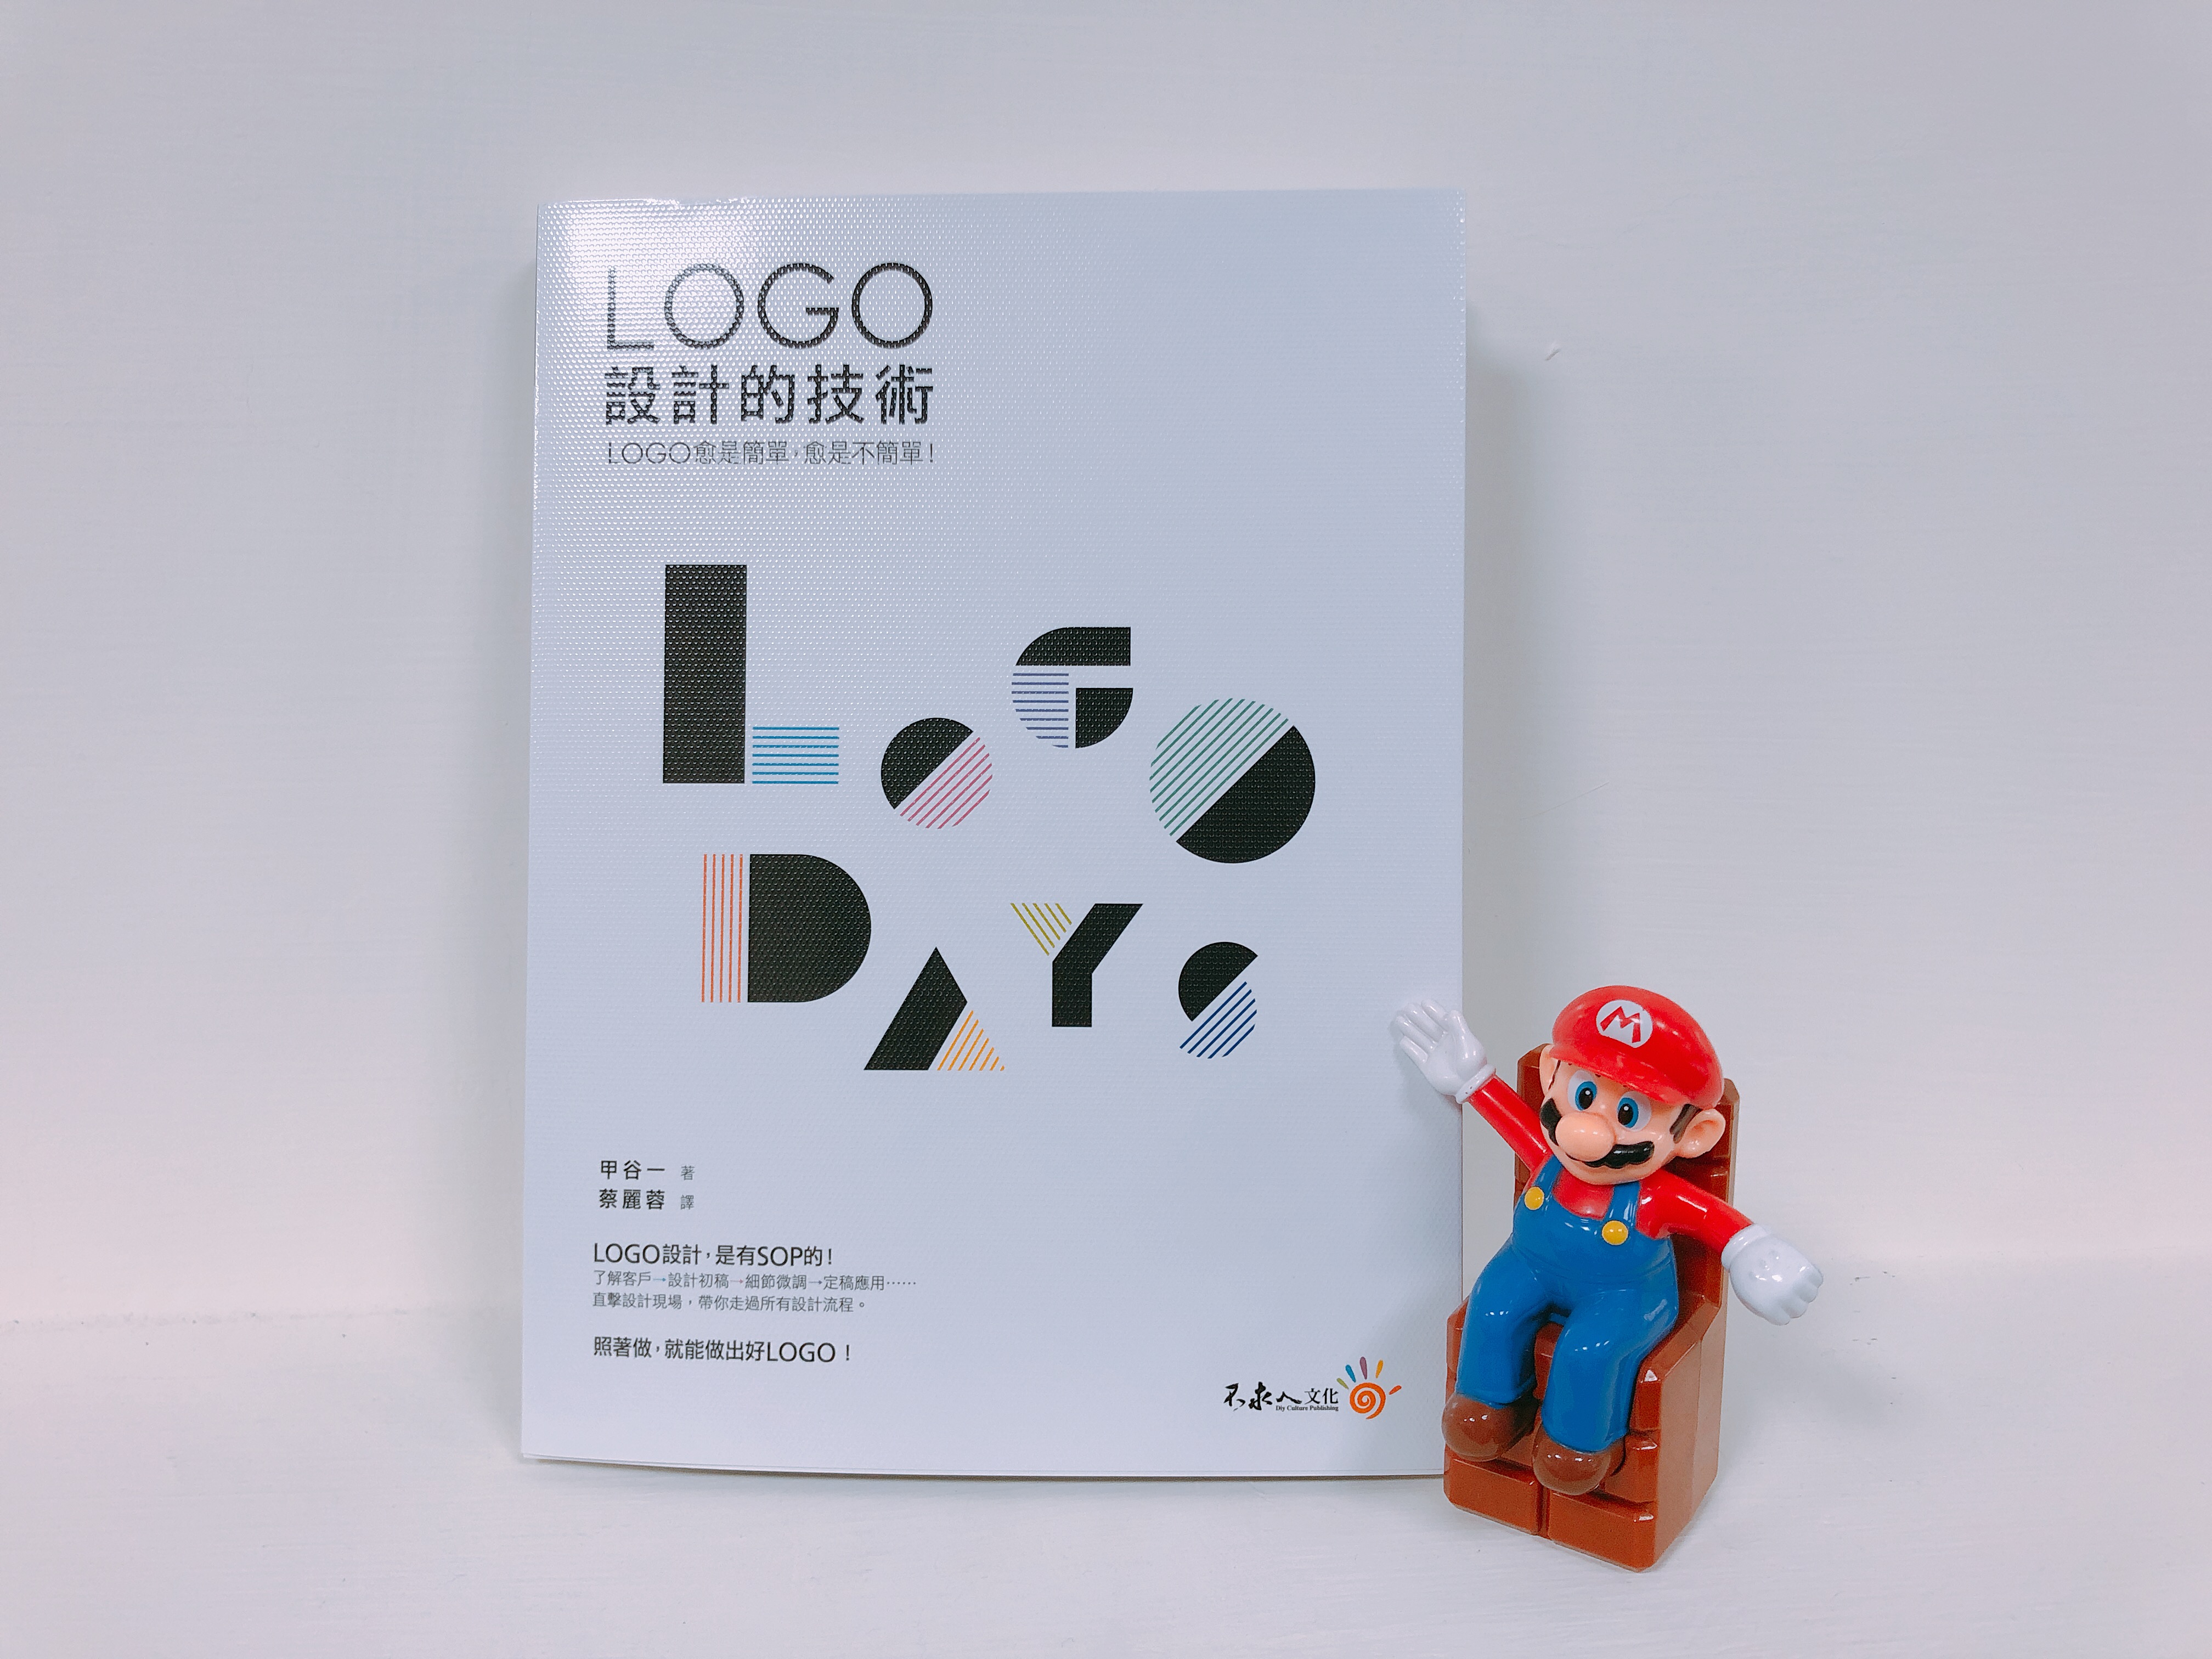 Logo 定稿 l LOGO設計的技術-捷可印